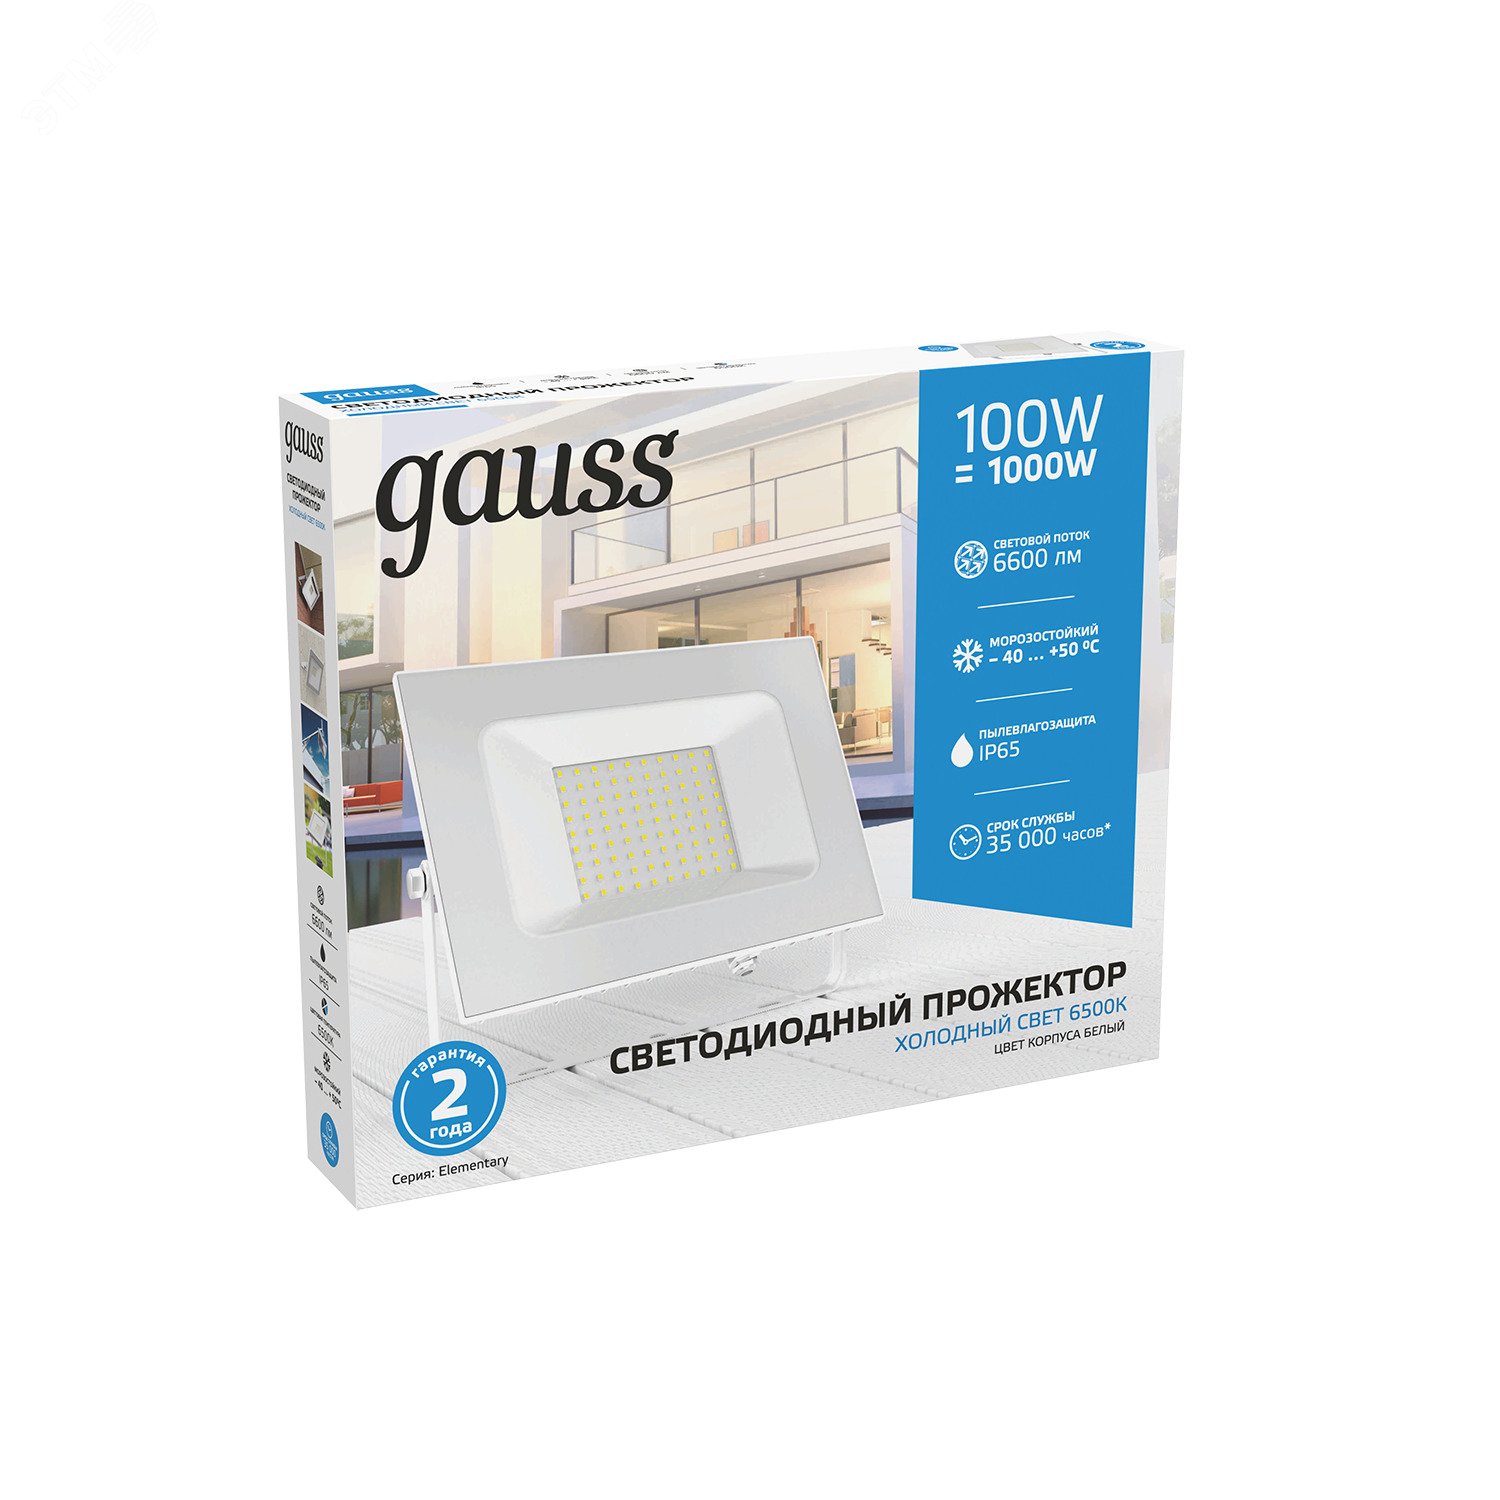 Прожектор светодиодный Gauss Elementary G2 100W 9000lm IP65 6500К белый 1/16 613120300 GAUSS - превью 6